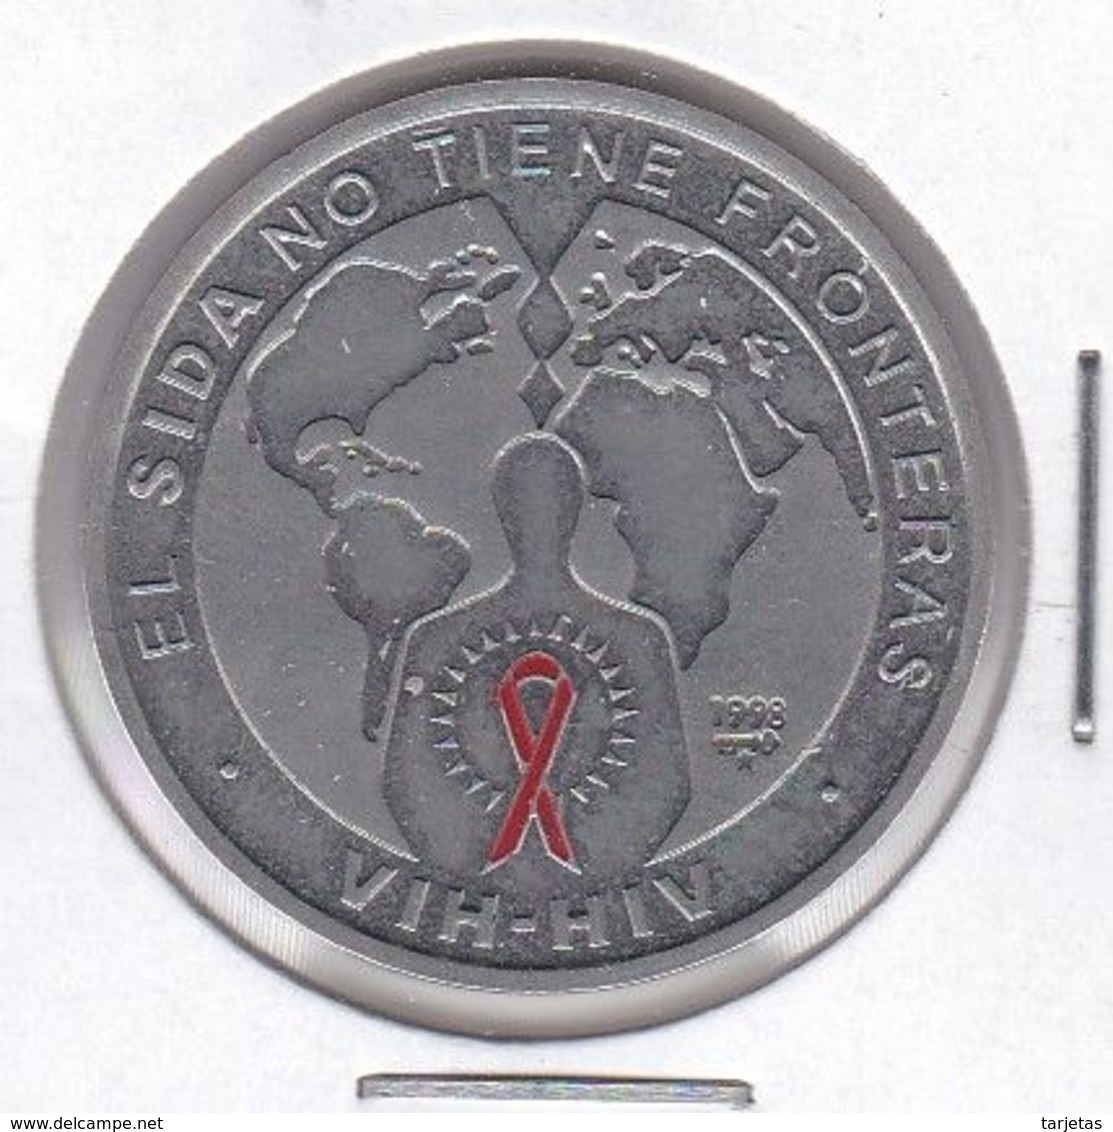 KM622 MONEDA DE CUBA DE 1 PESO DEL AÑO 1998 DE EL SIDA NO TIENE FRONTERAS - Kuba